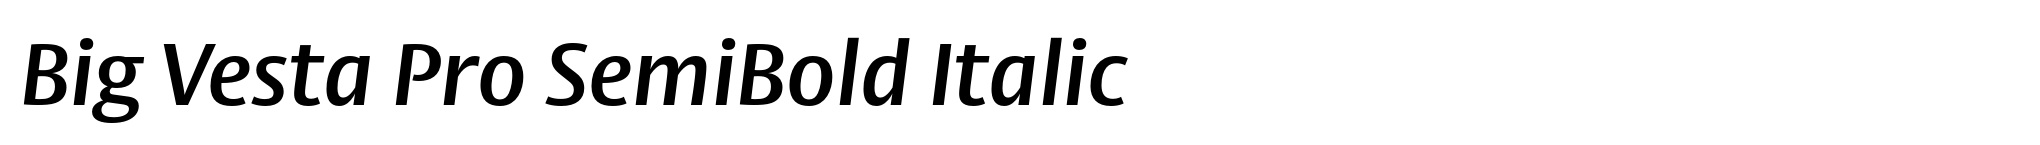 Big Vesta Pro SemiBold Italic image